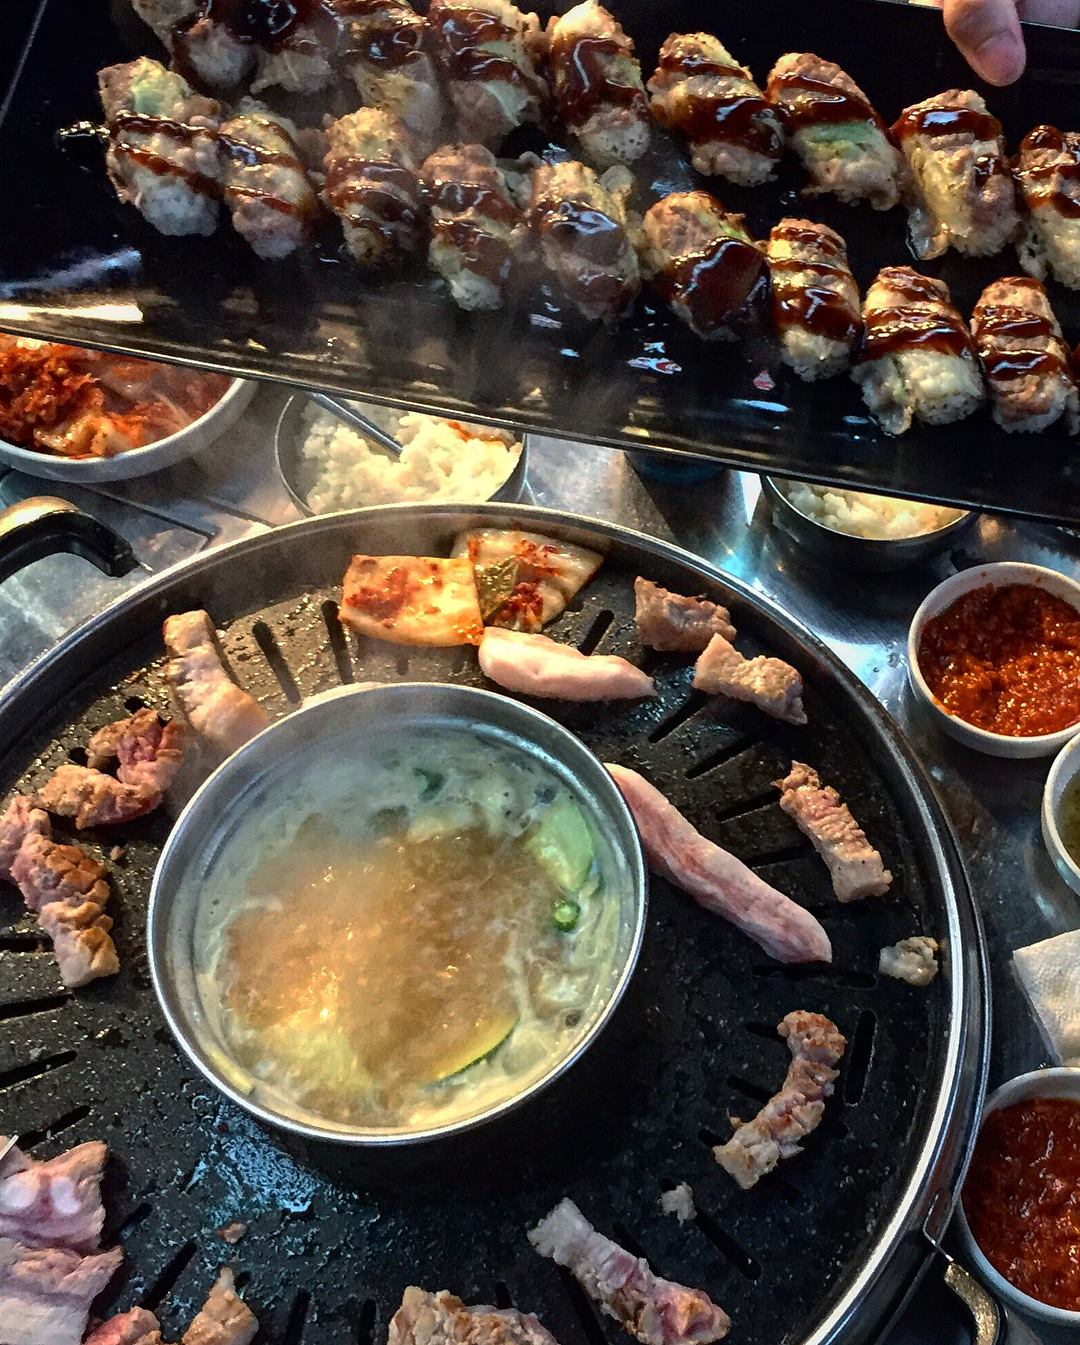 beef sushi roll, samgyupsal, hangjeongsal, galbi - korean place 1